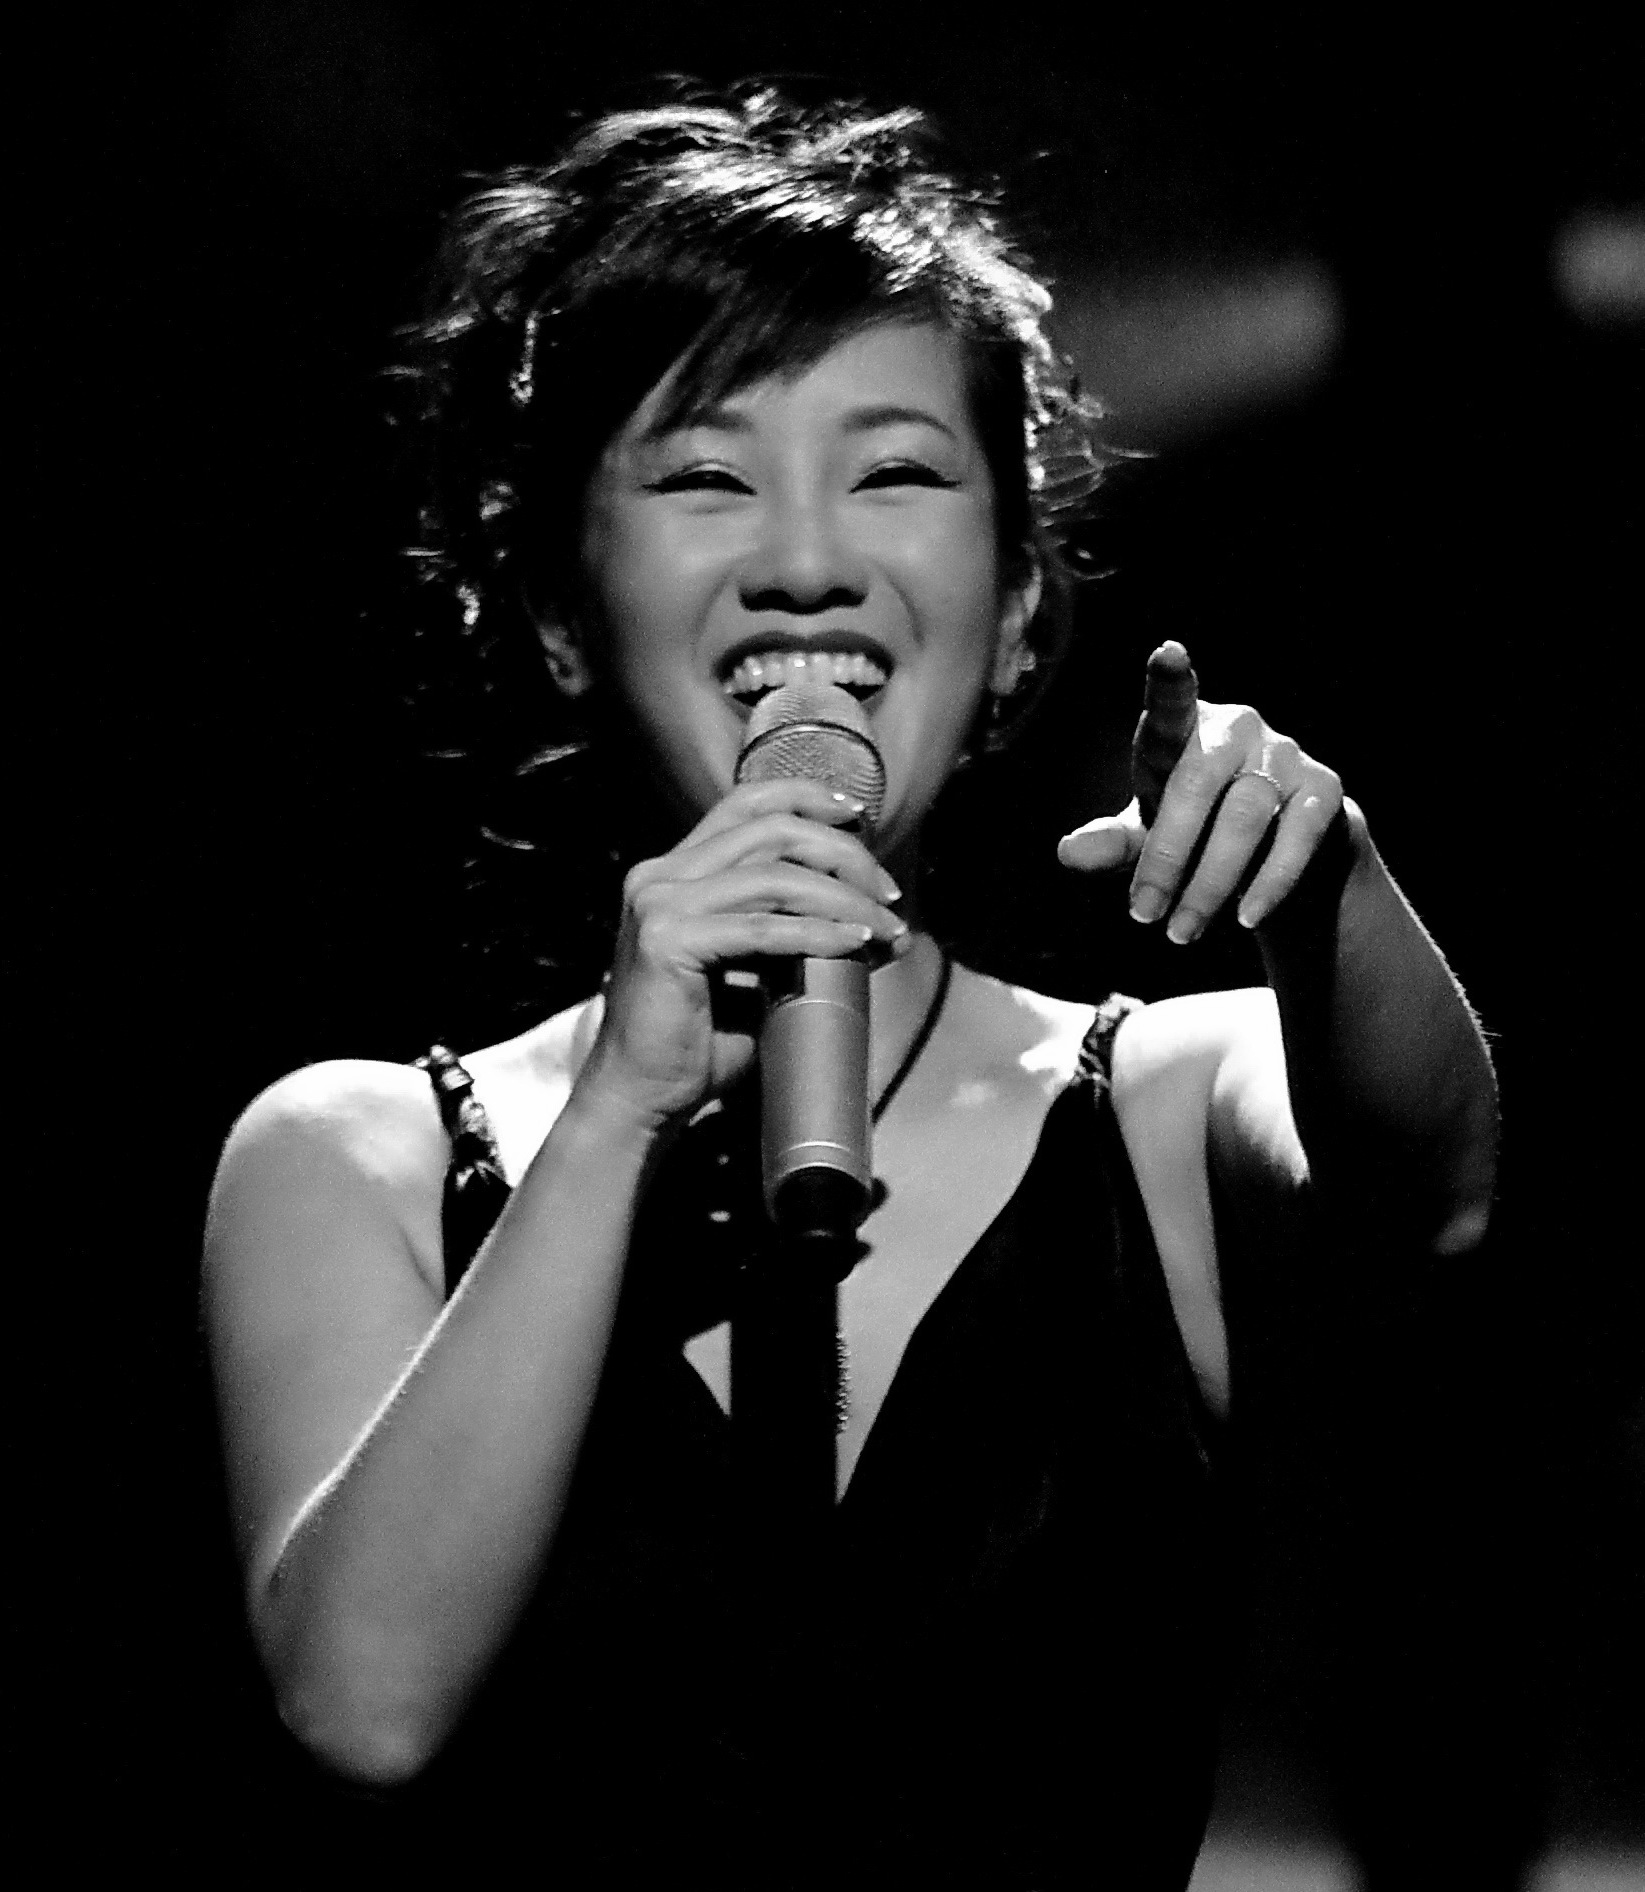 Hồng Nhung là một ca sĩ tài năng và nổi tiếng của Việt Nam. Với giọng hát đầy cảm xúc và phong cách biểu diễn chuyên nghiệp, chắc chắn bạn sẽ không thể bỏ qua hình ảnh liên quan đến Hồng Nhung, một nữ ca sĩ gây ấn tượng với khán giả.